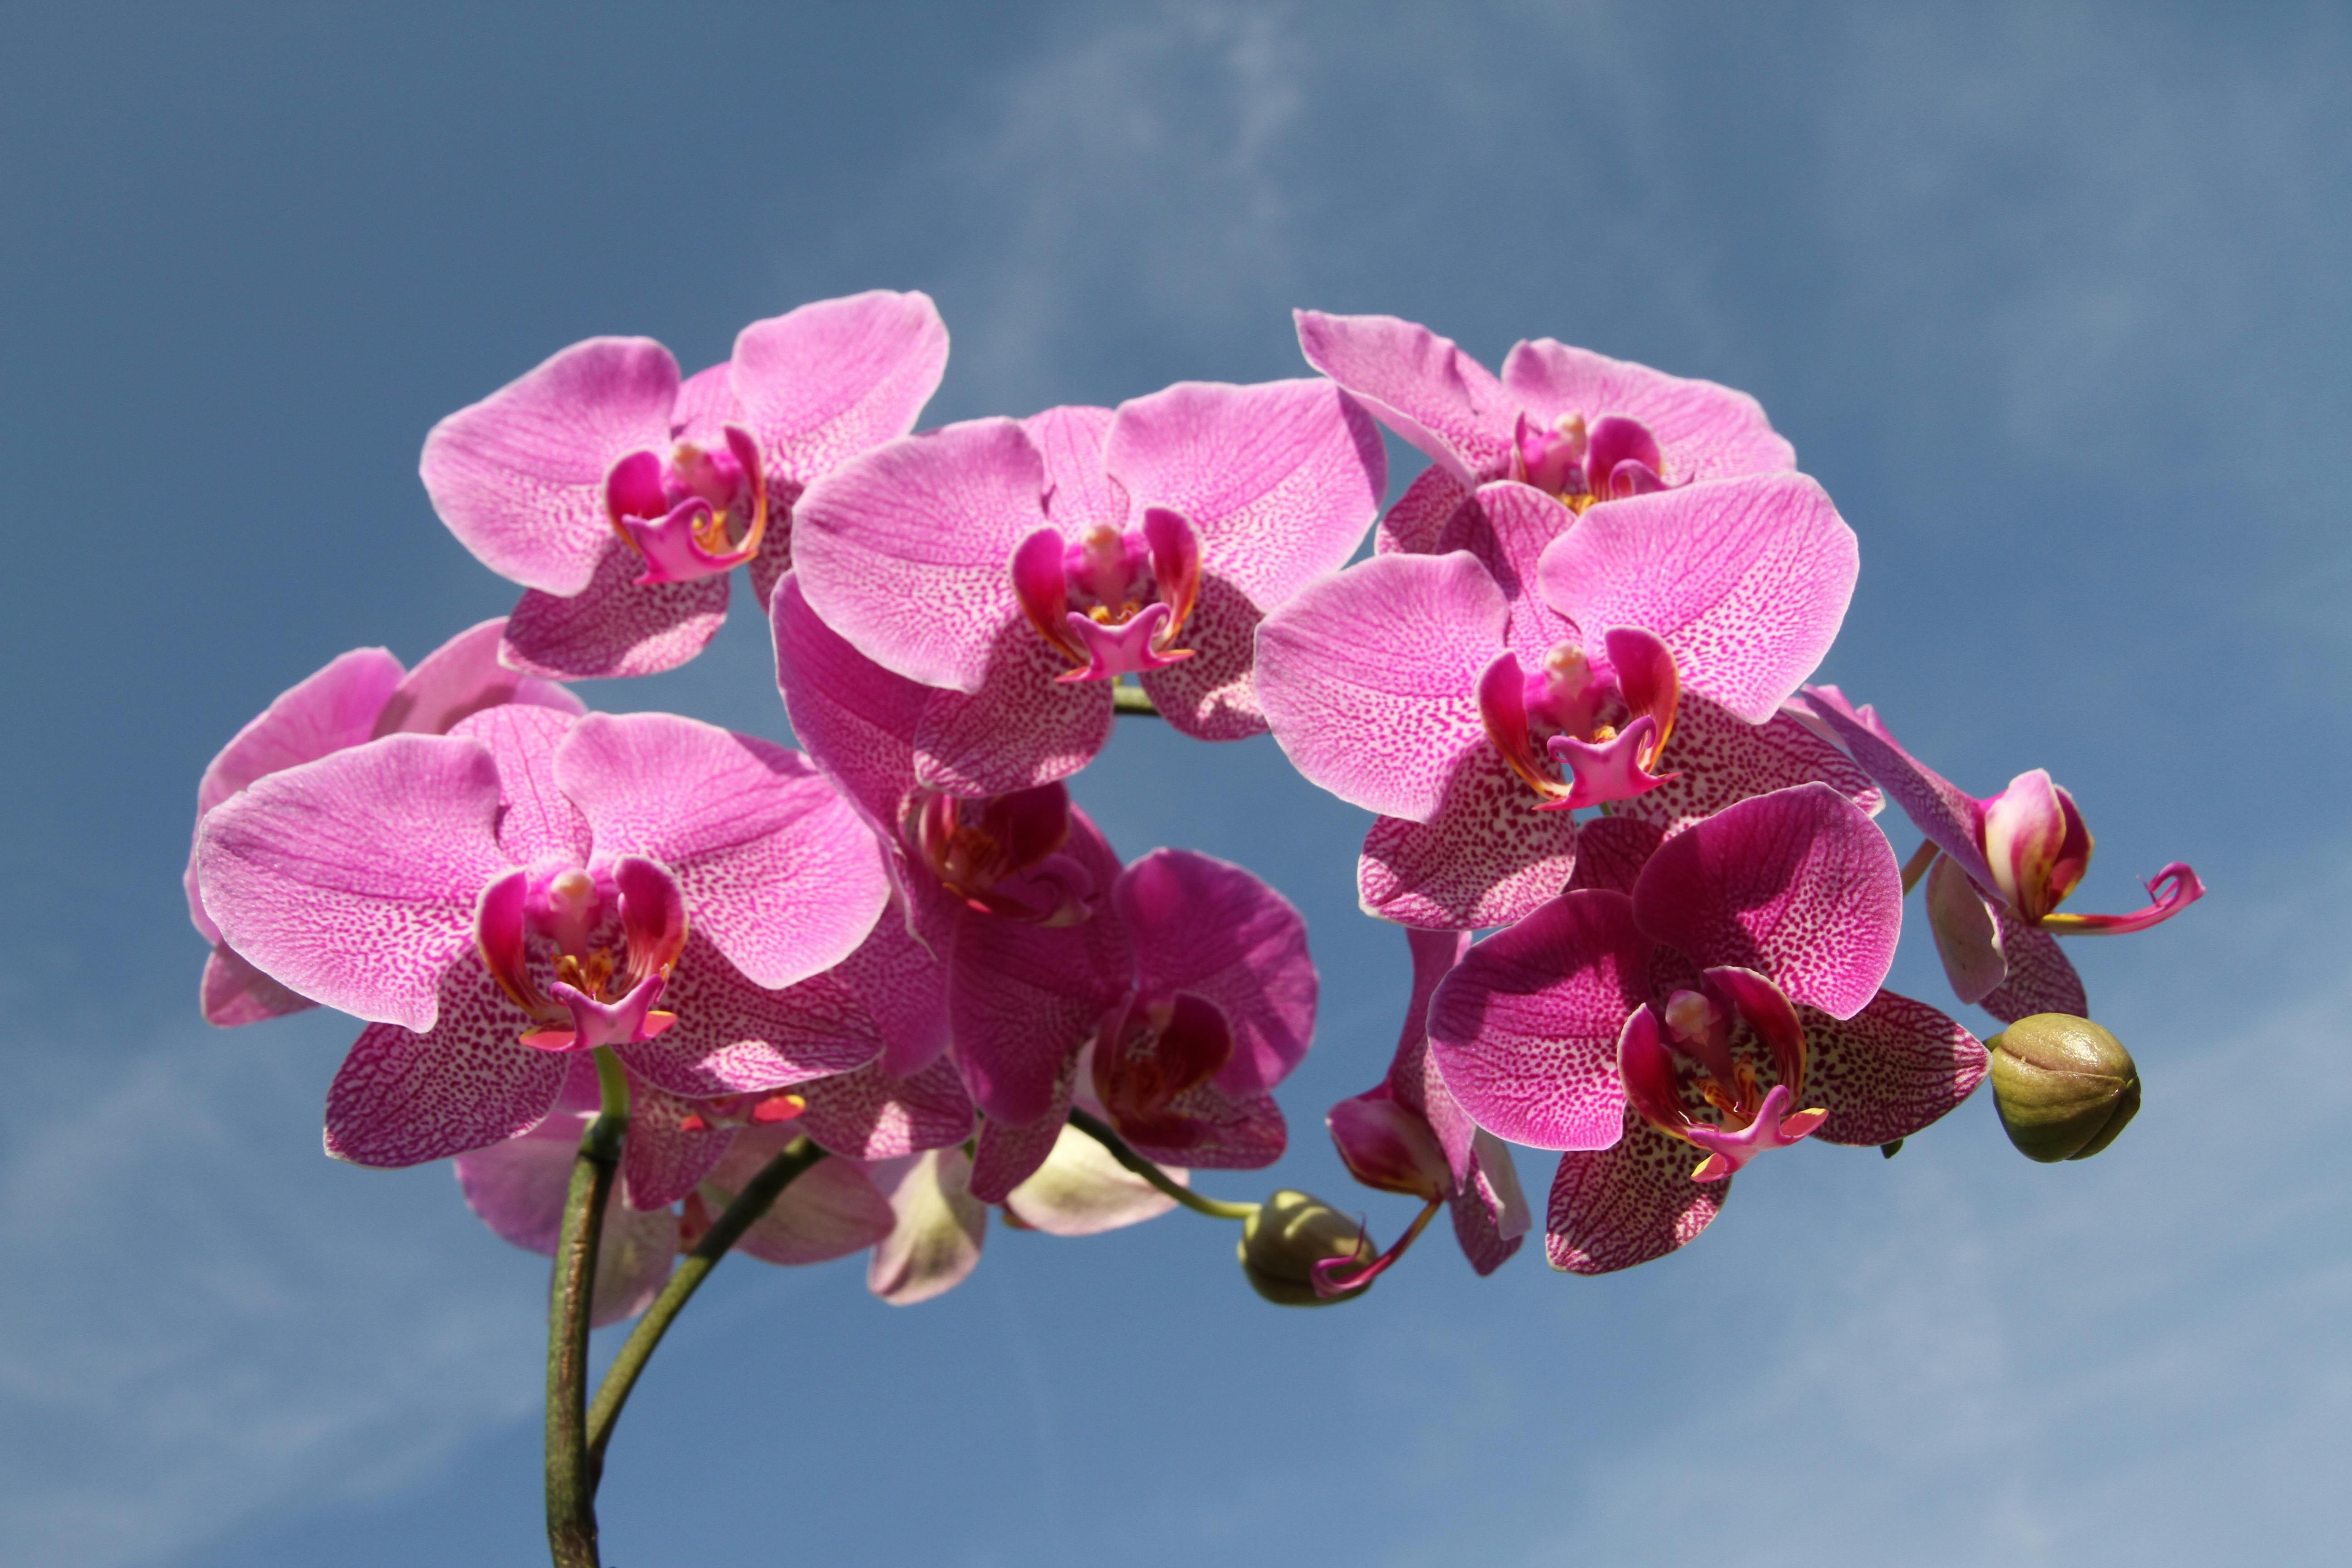 За орхидеями нужно уметь ухаживать